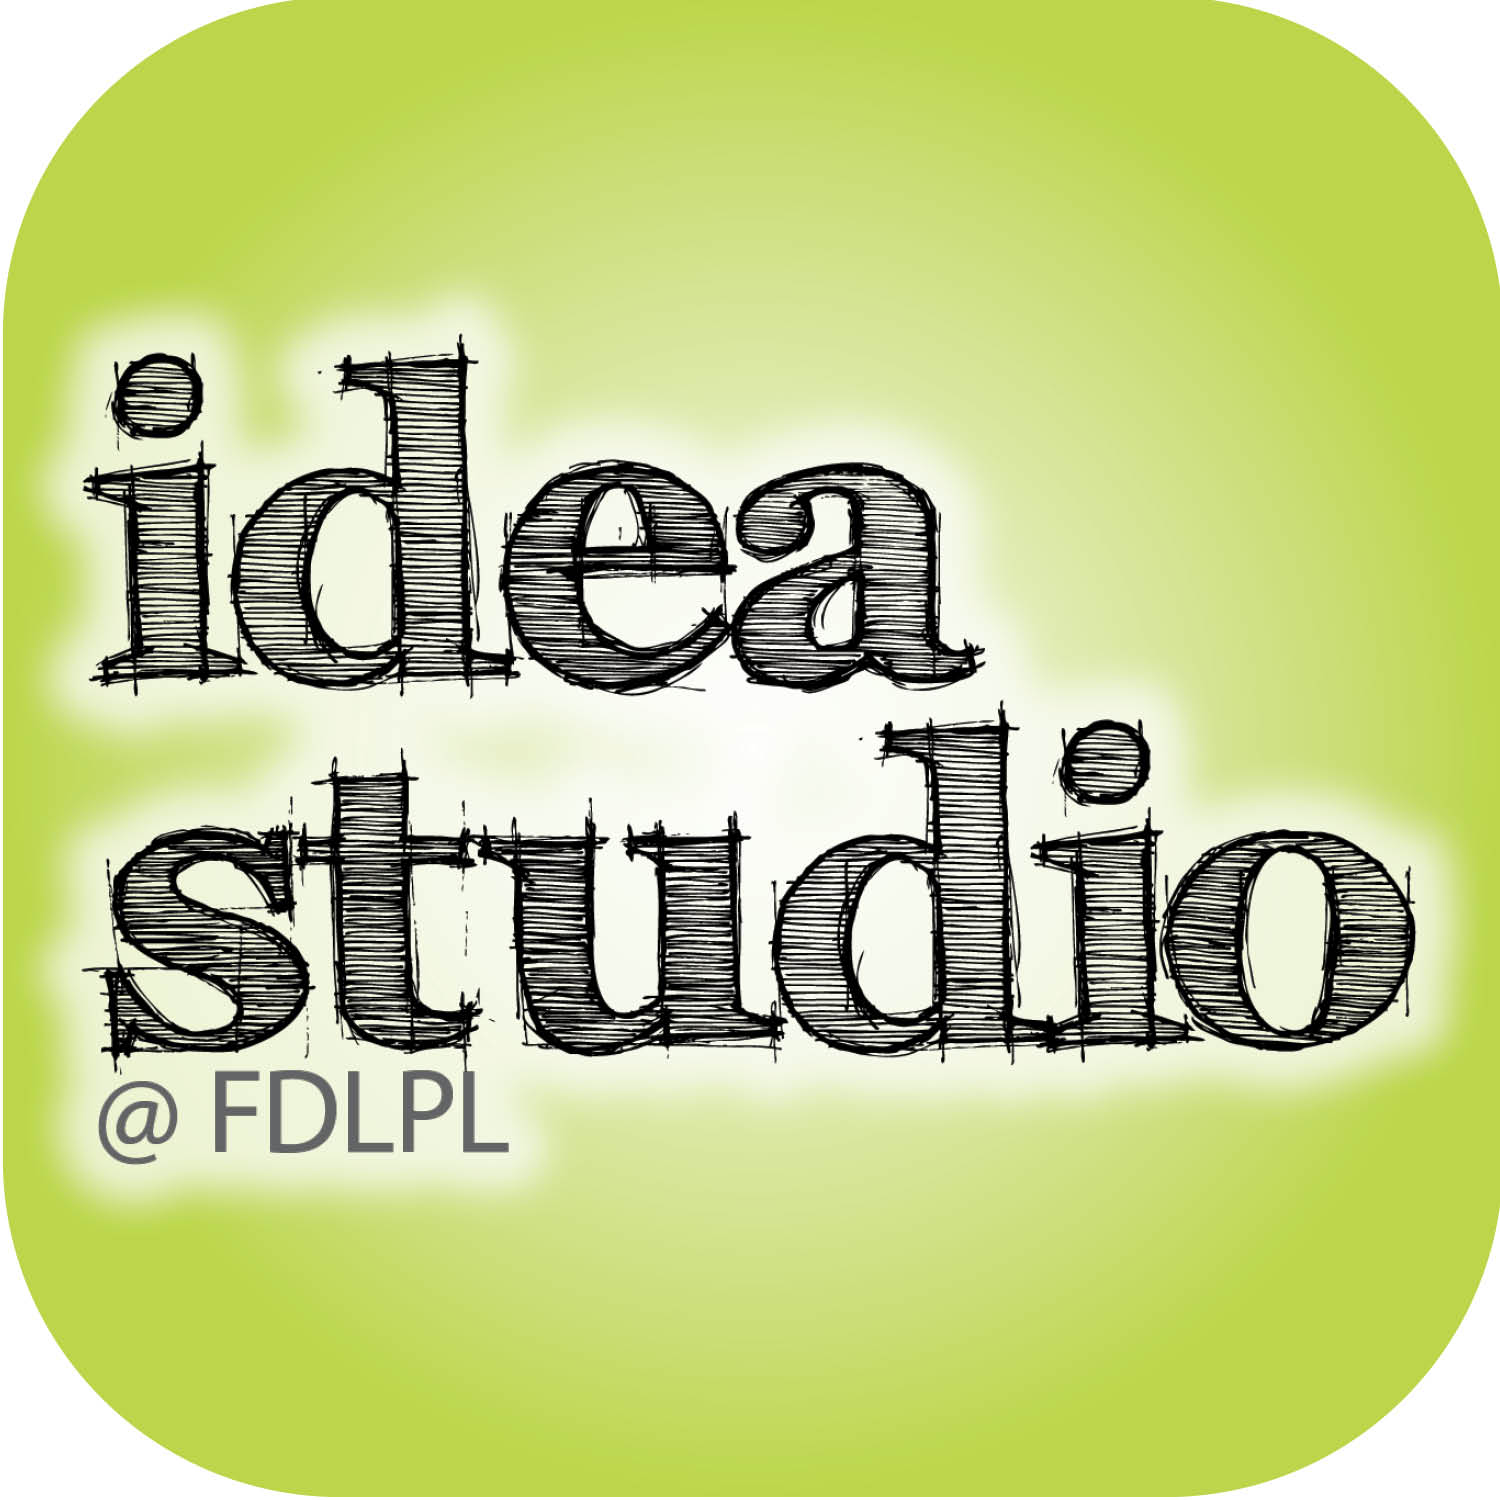 The season is getting spooky in FDLPL’s Idea Studio